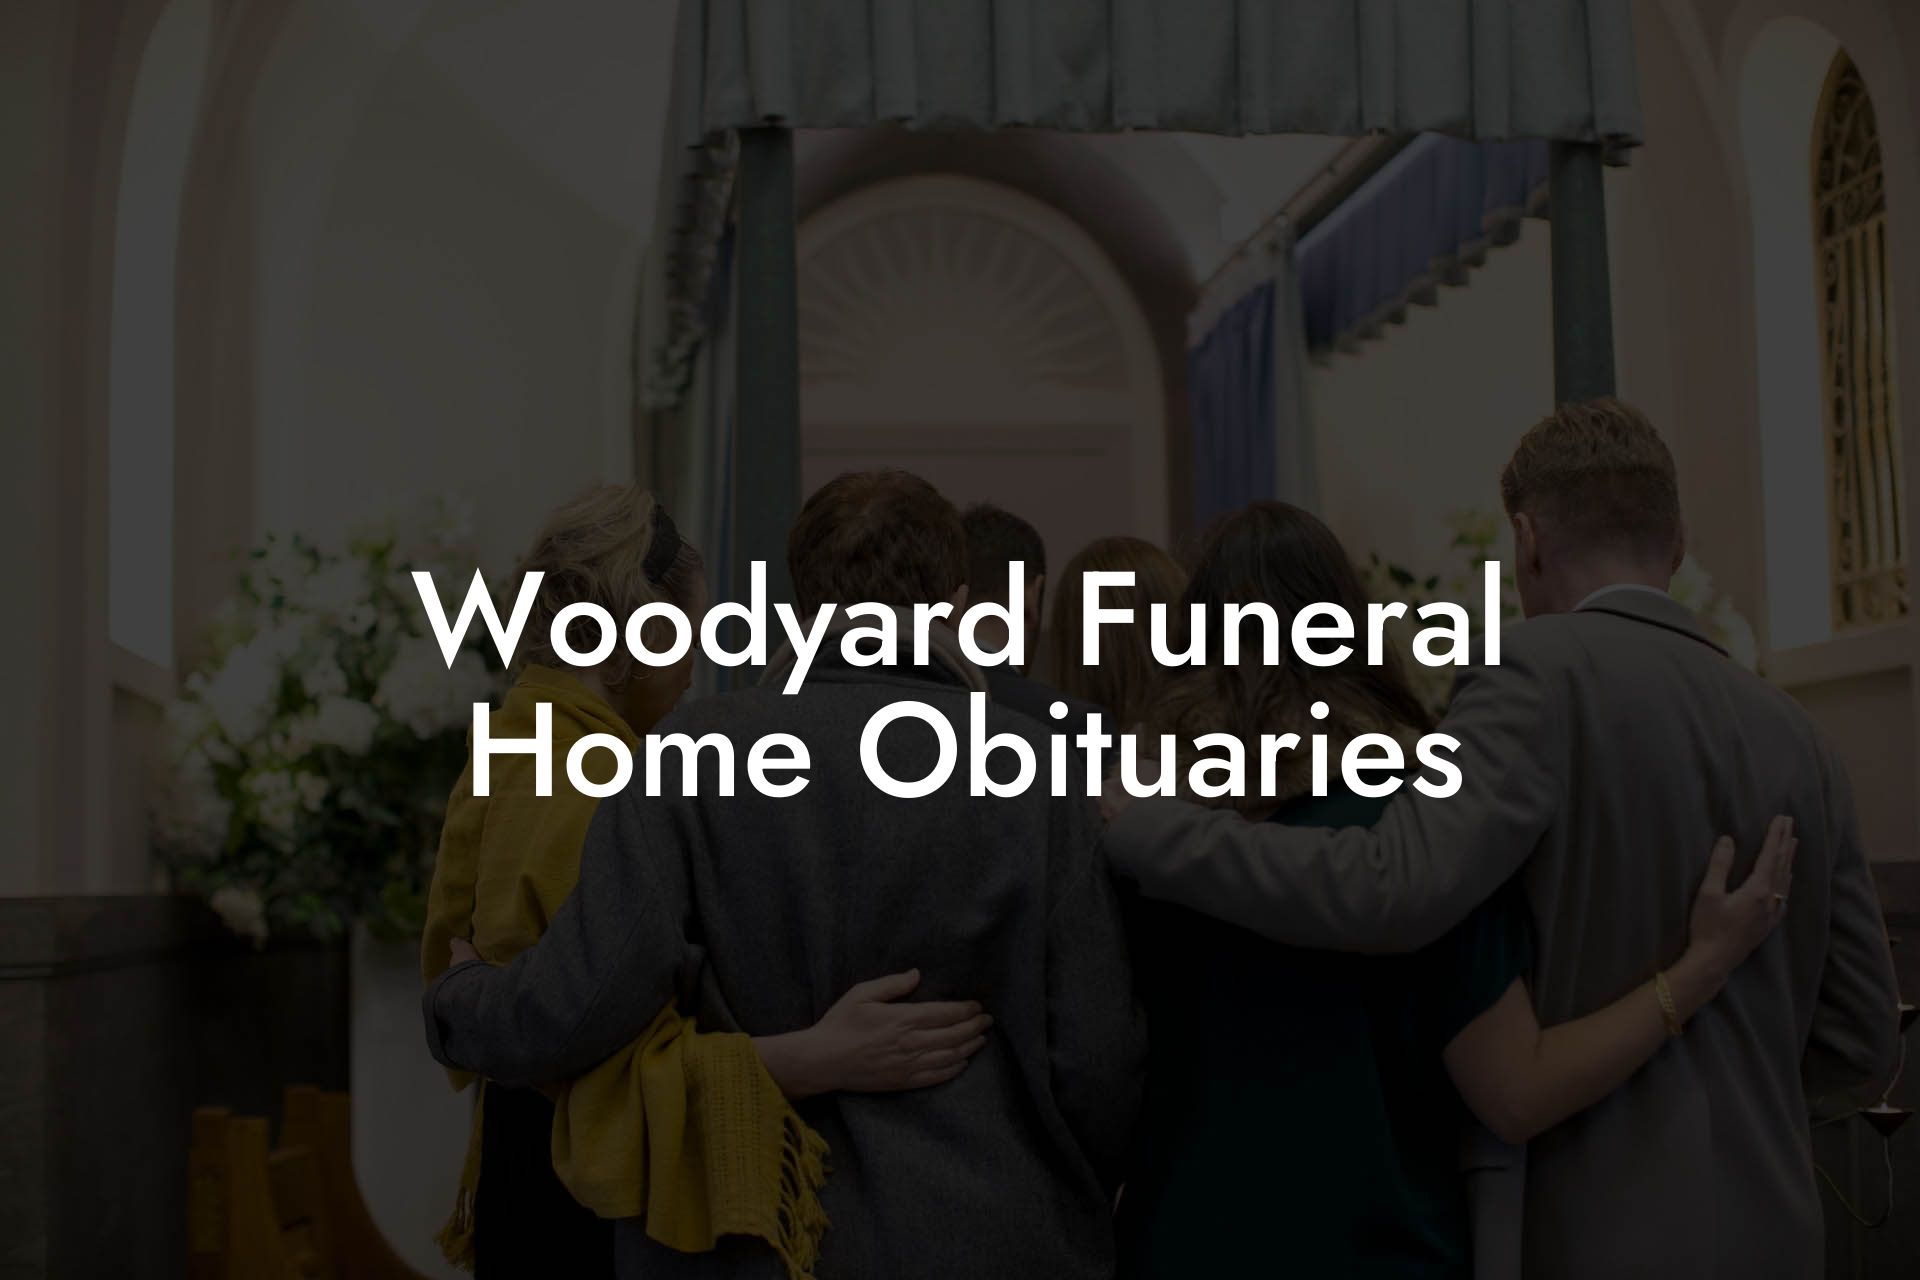 Woodyard Funeral Home Obituaries